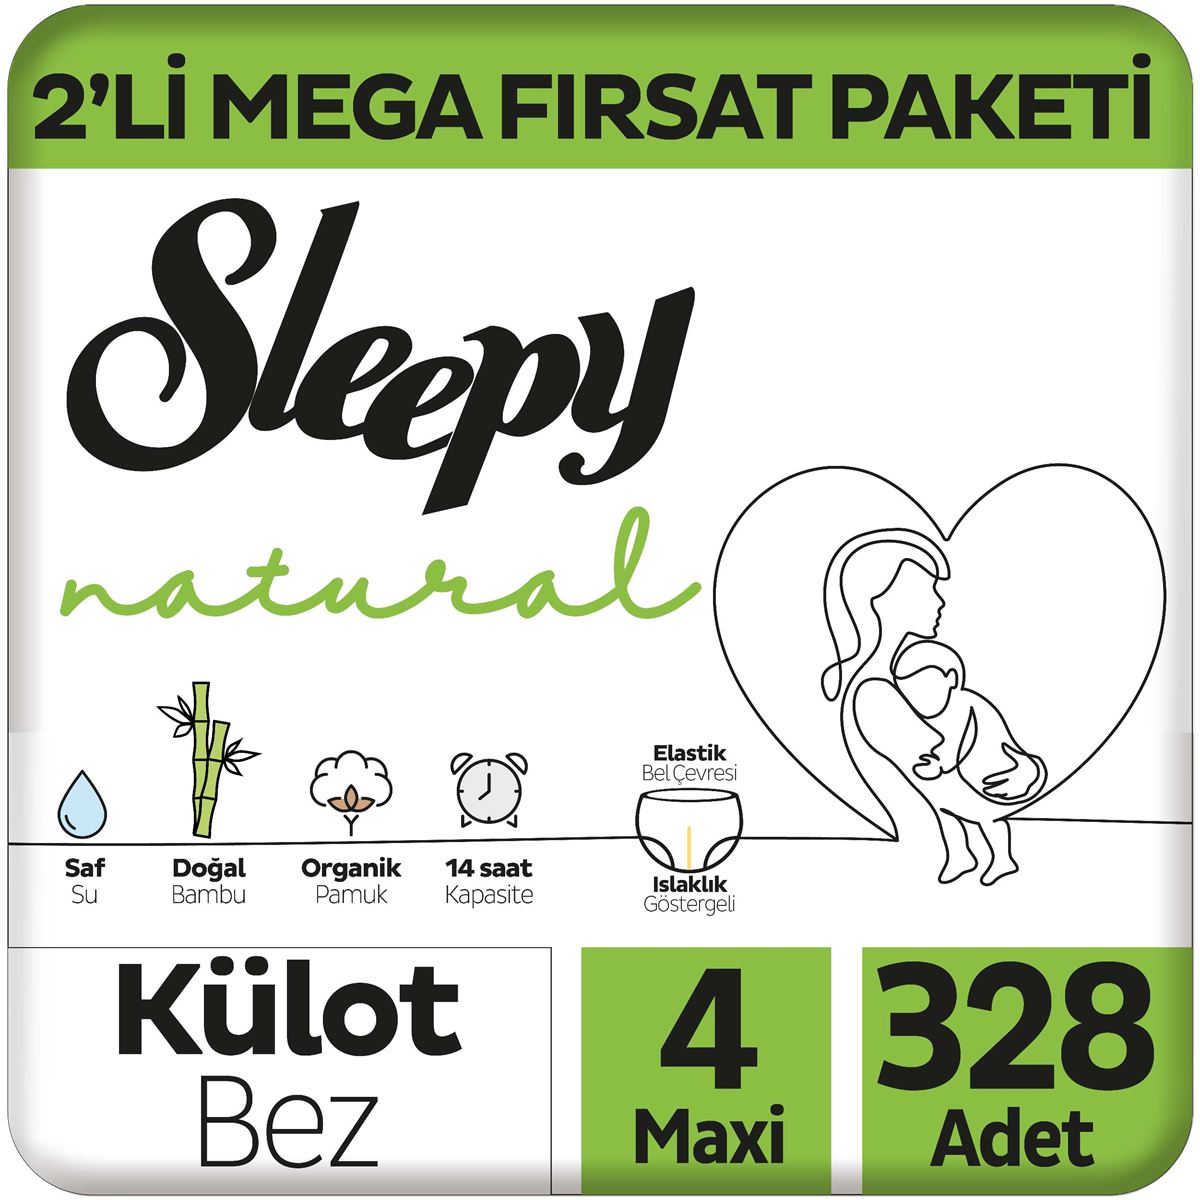 Sleepy Natural 2'li Mega Fırsat Paketi Külot Bez 4 Numara Maxi 328 Adet